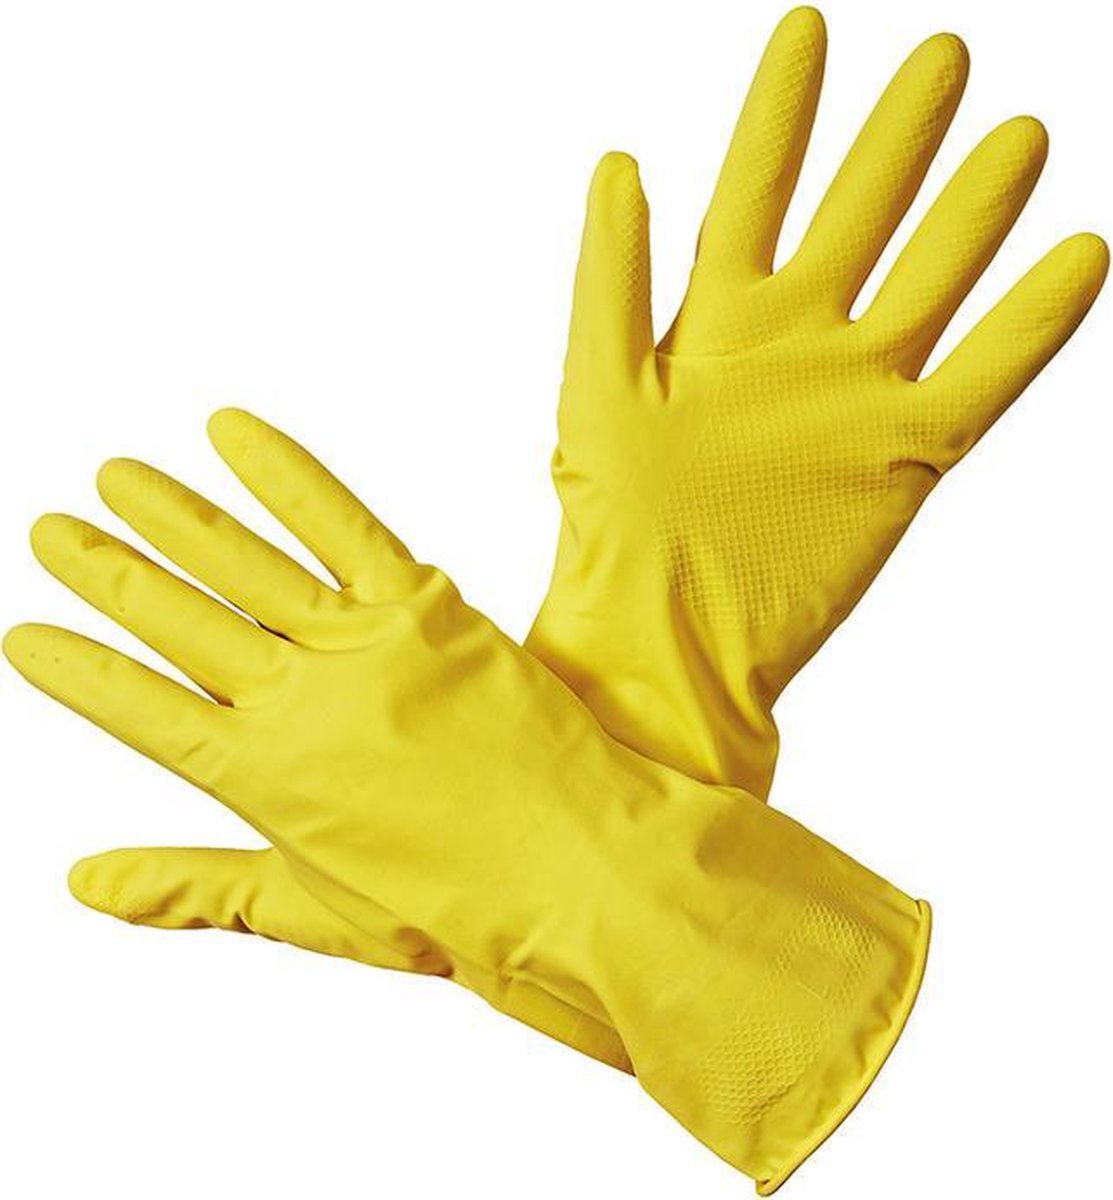 Gant de ménage en latex jaune top qualité